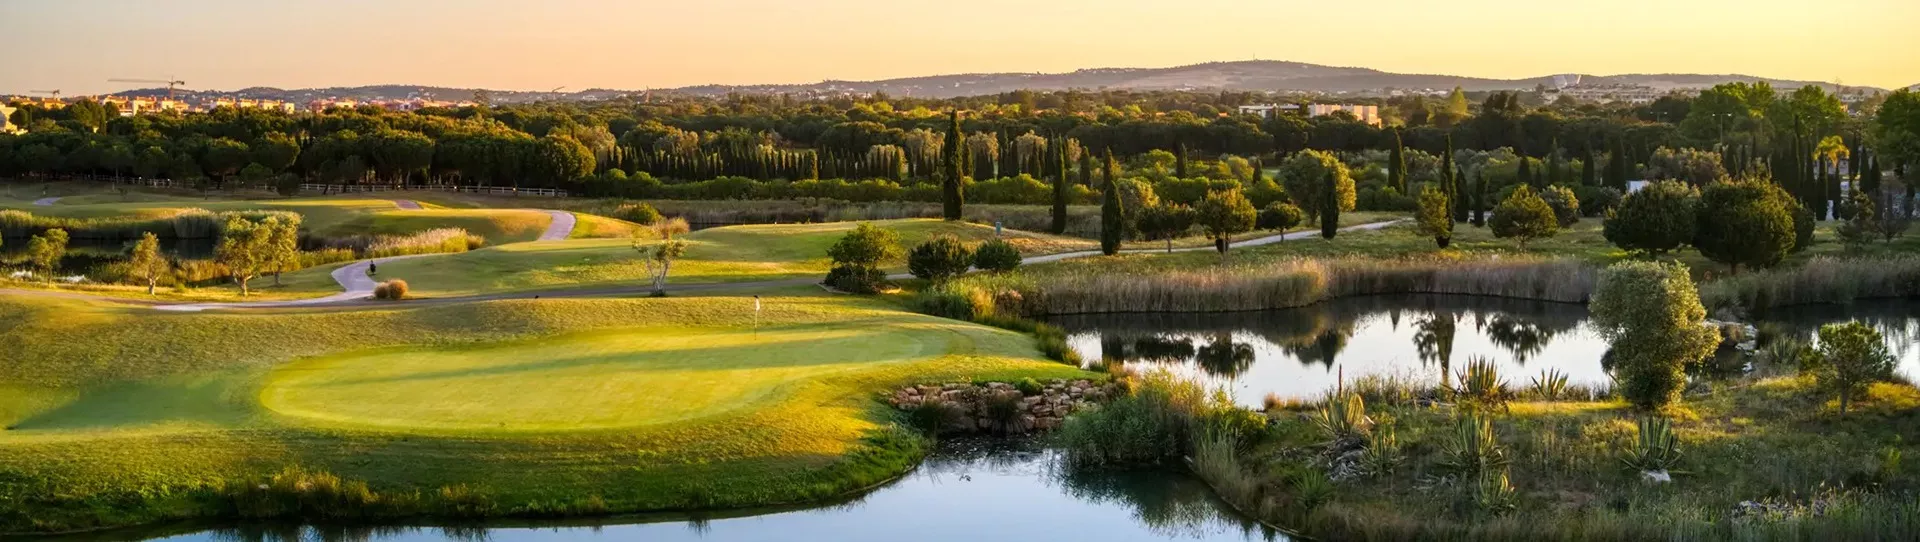 Portugal golf courses - Vilamoura Dom Pedro Victoria - Photo 1